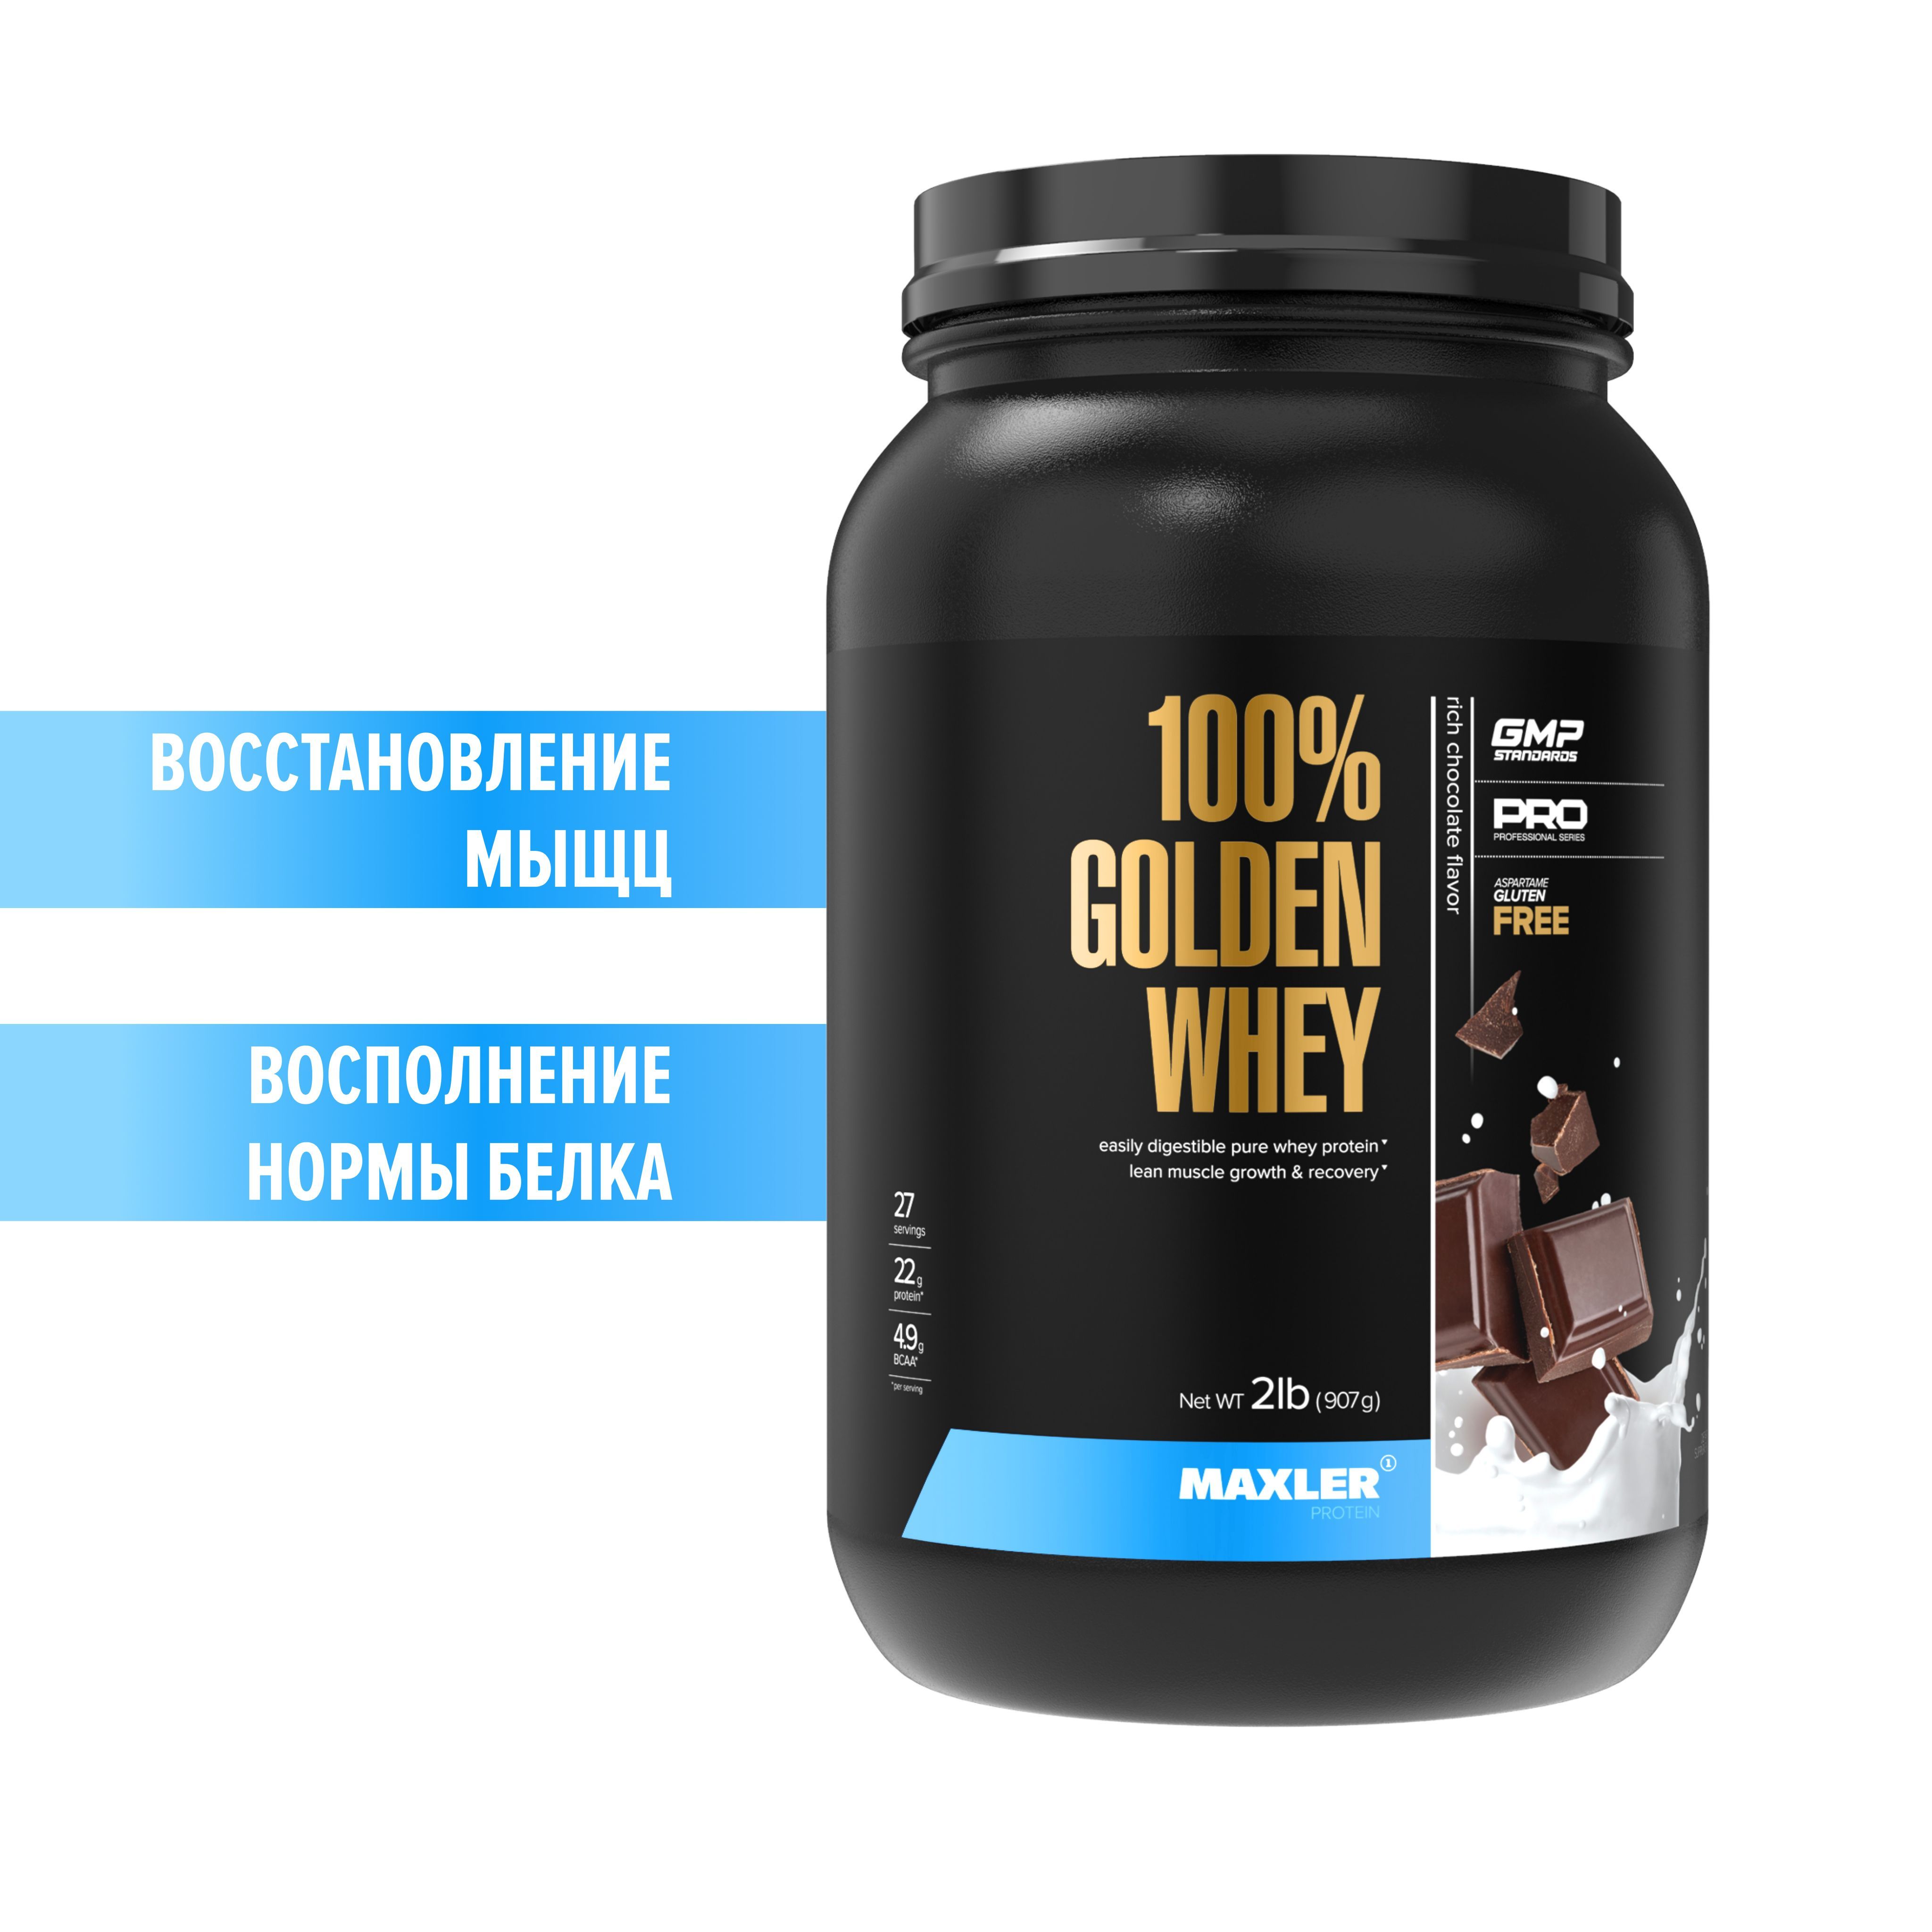 Протеин golden. Maxler протеин 907 гр. Maxler 100% Golden Whey.